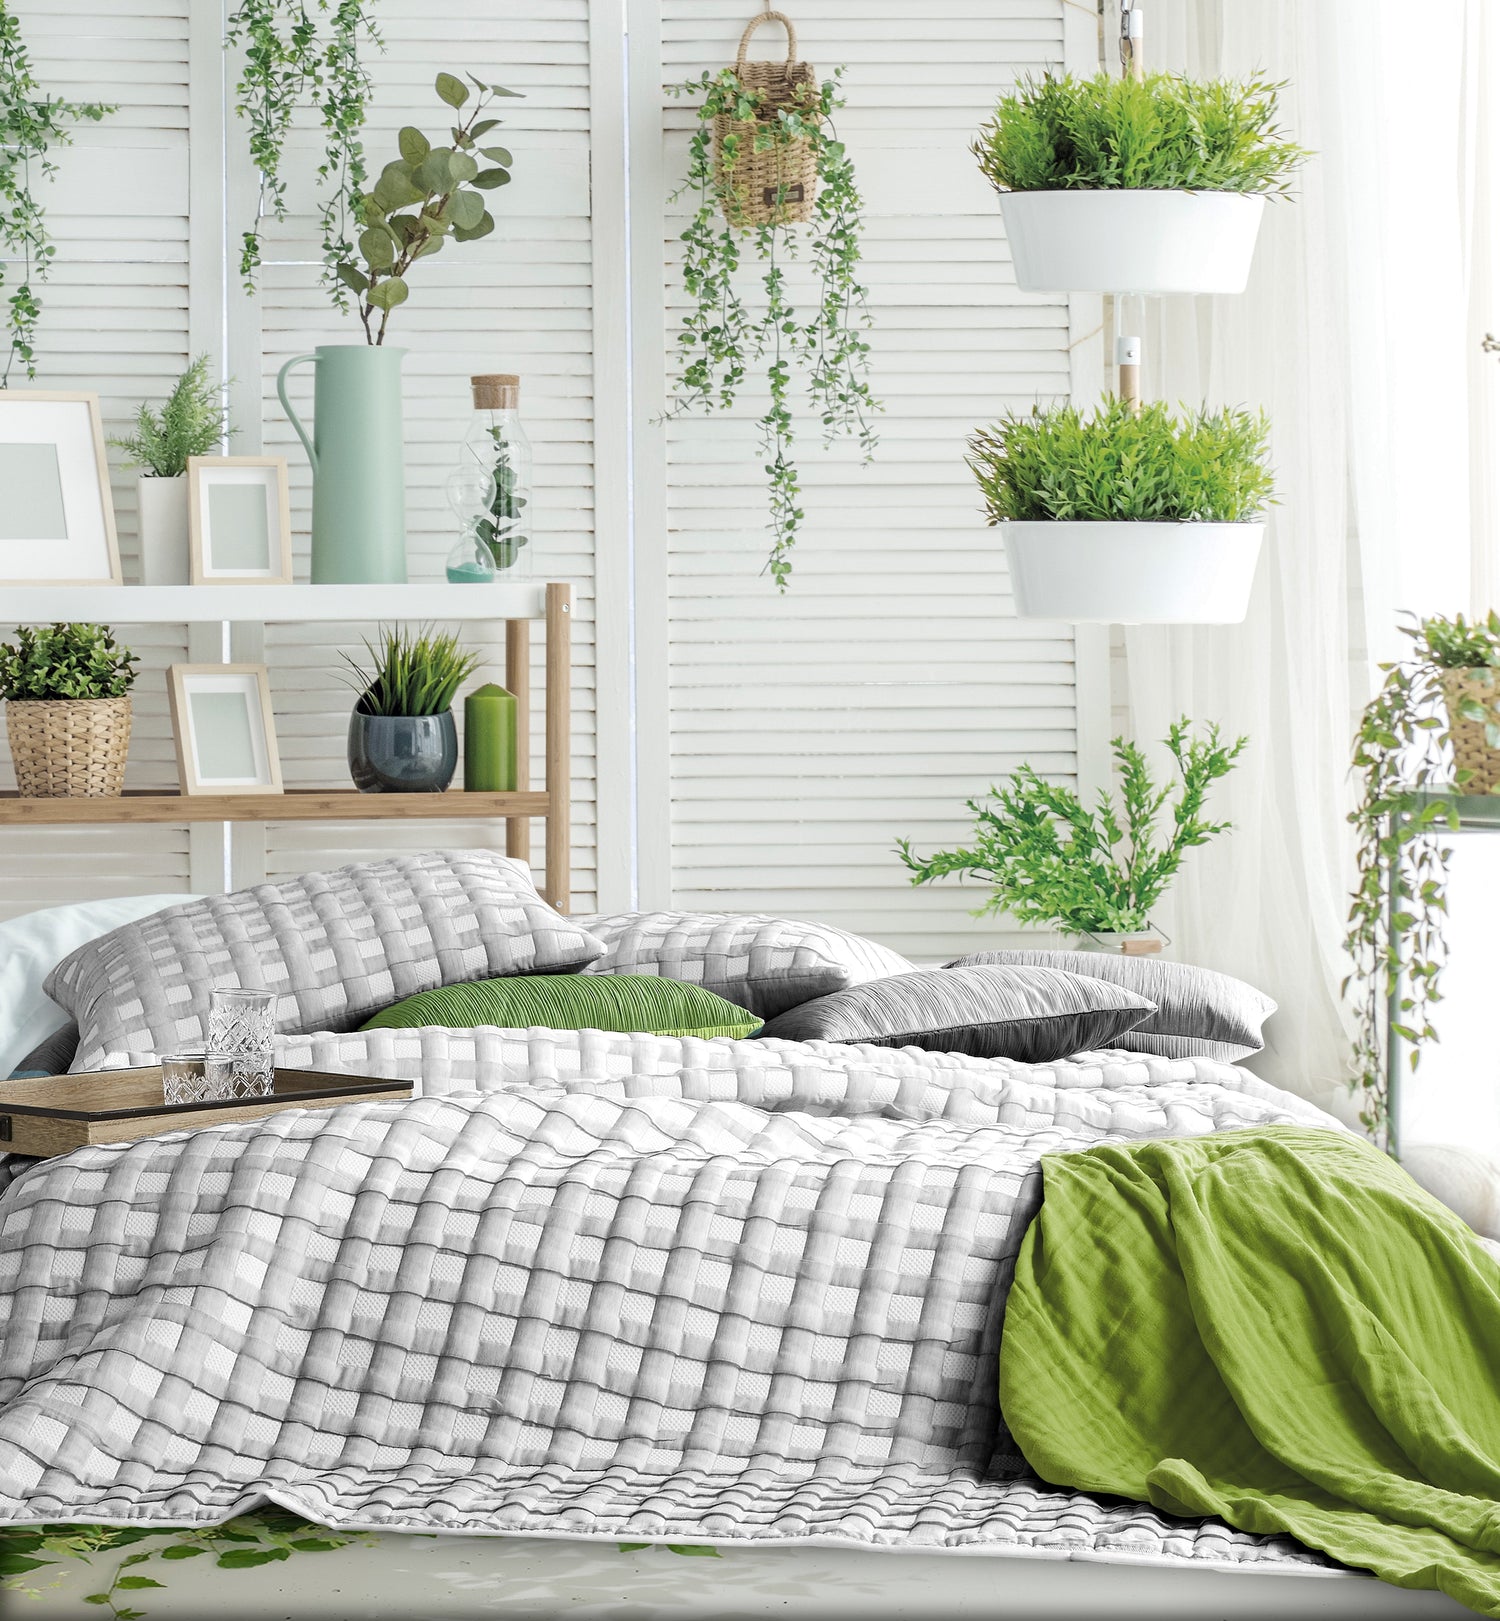 Juliet, bout de lit banc de lit éco-design Staygreen